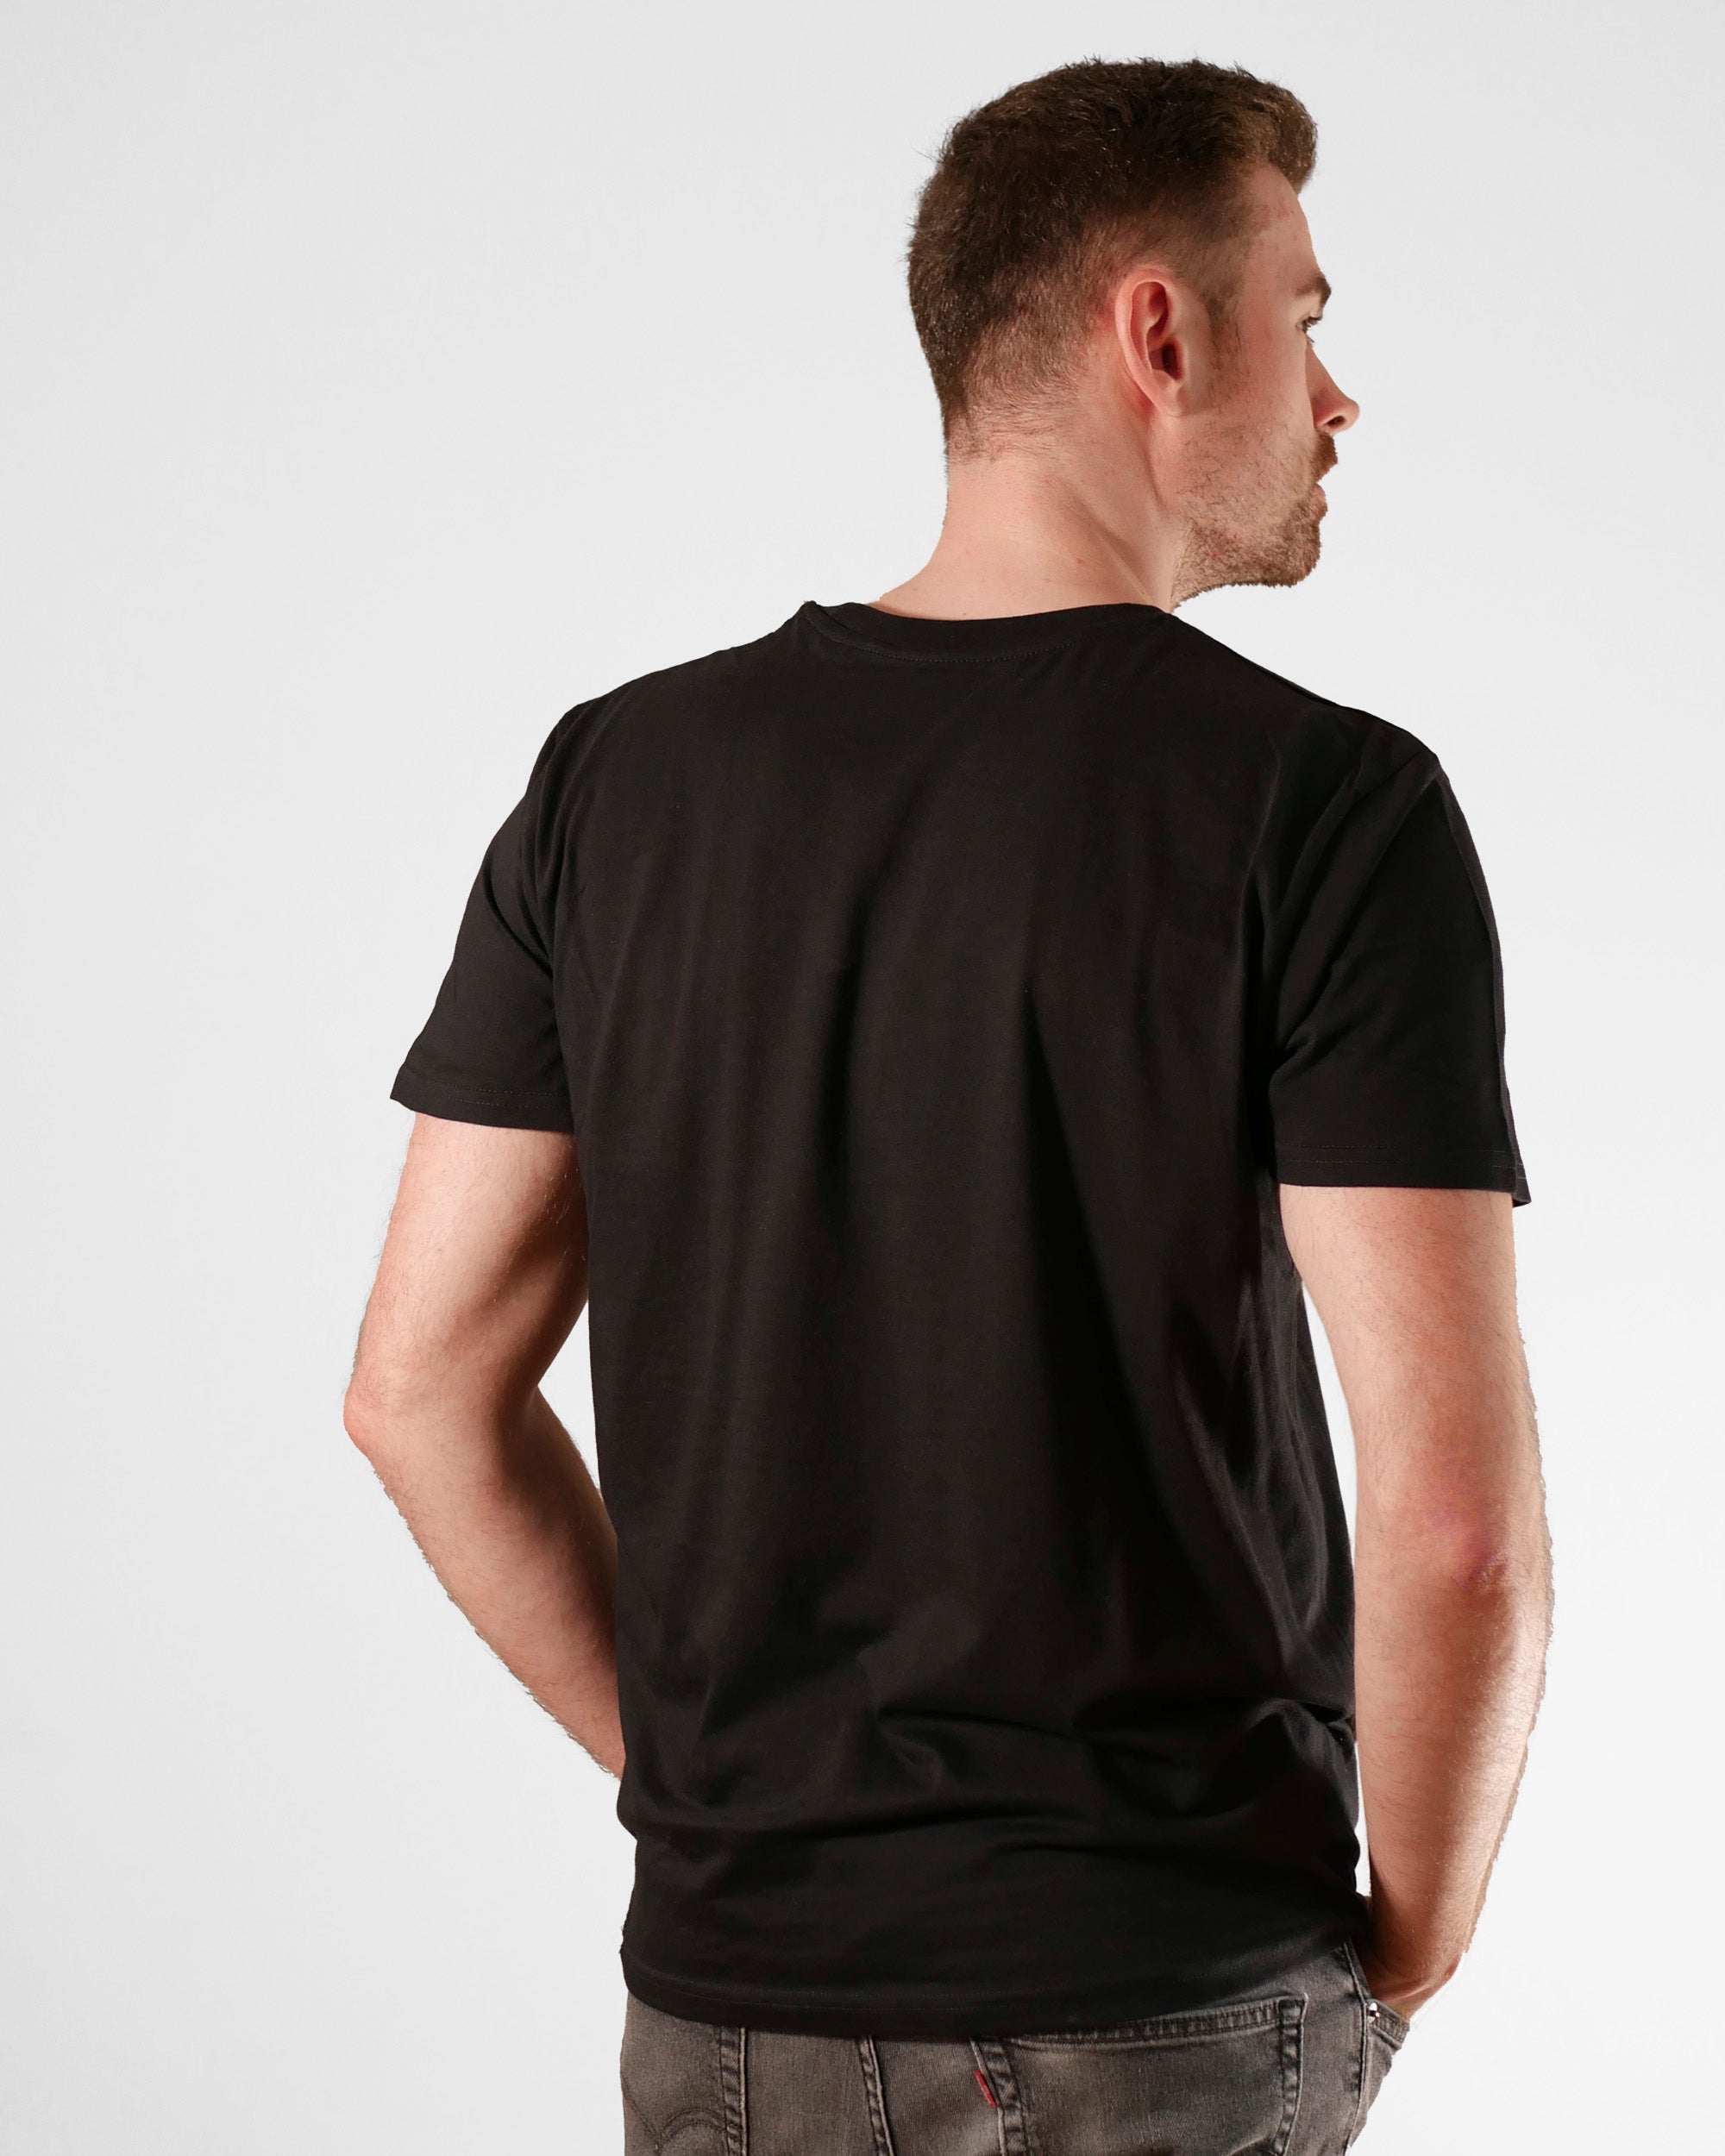 Um die Ecke denken | 3-Style T-Shirt